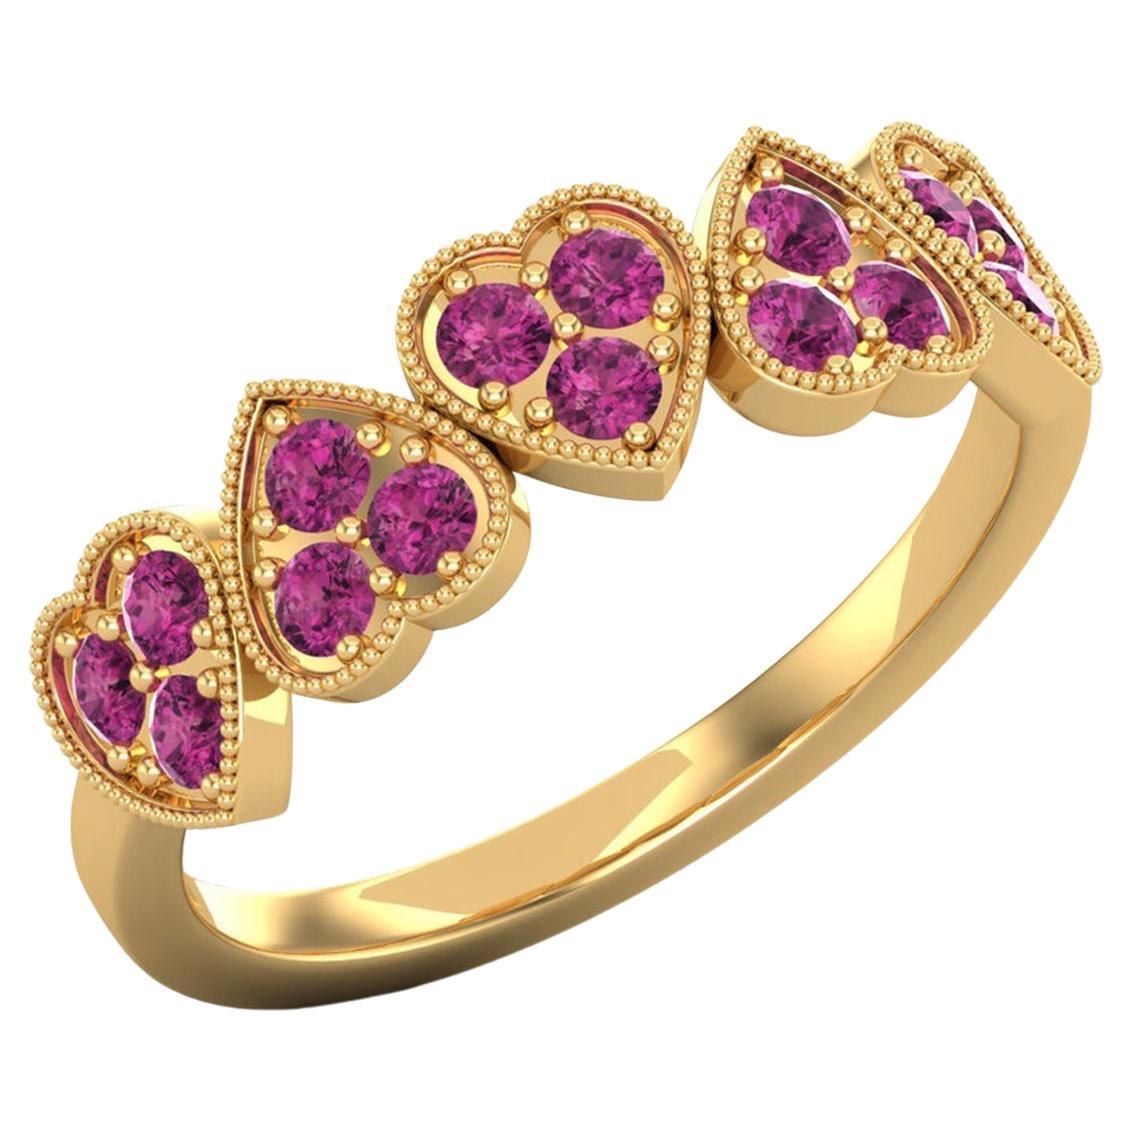 14 Karat Gold Rubellite Tourmaline Ring / Gold Wedding Ring / Heart Ring for Her